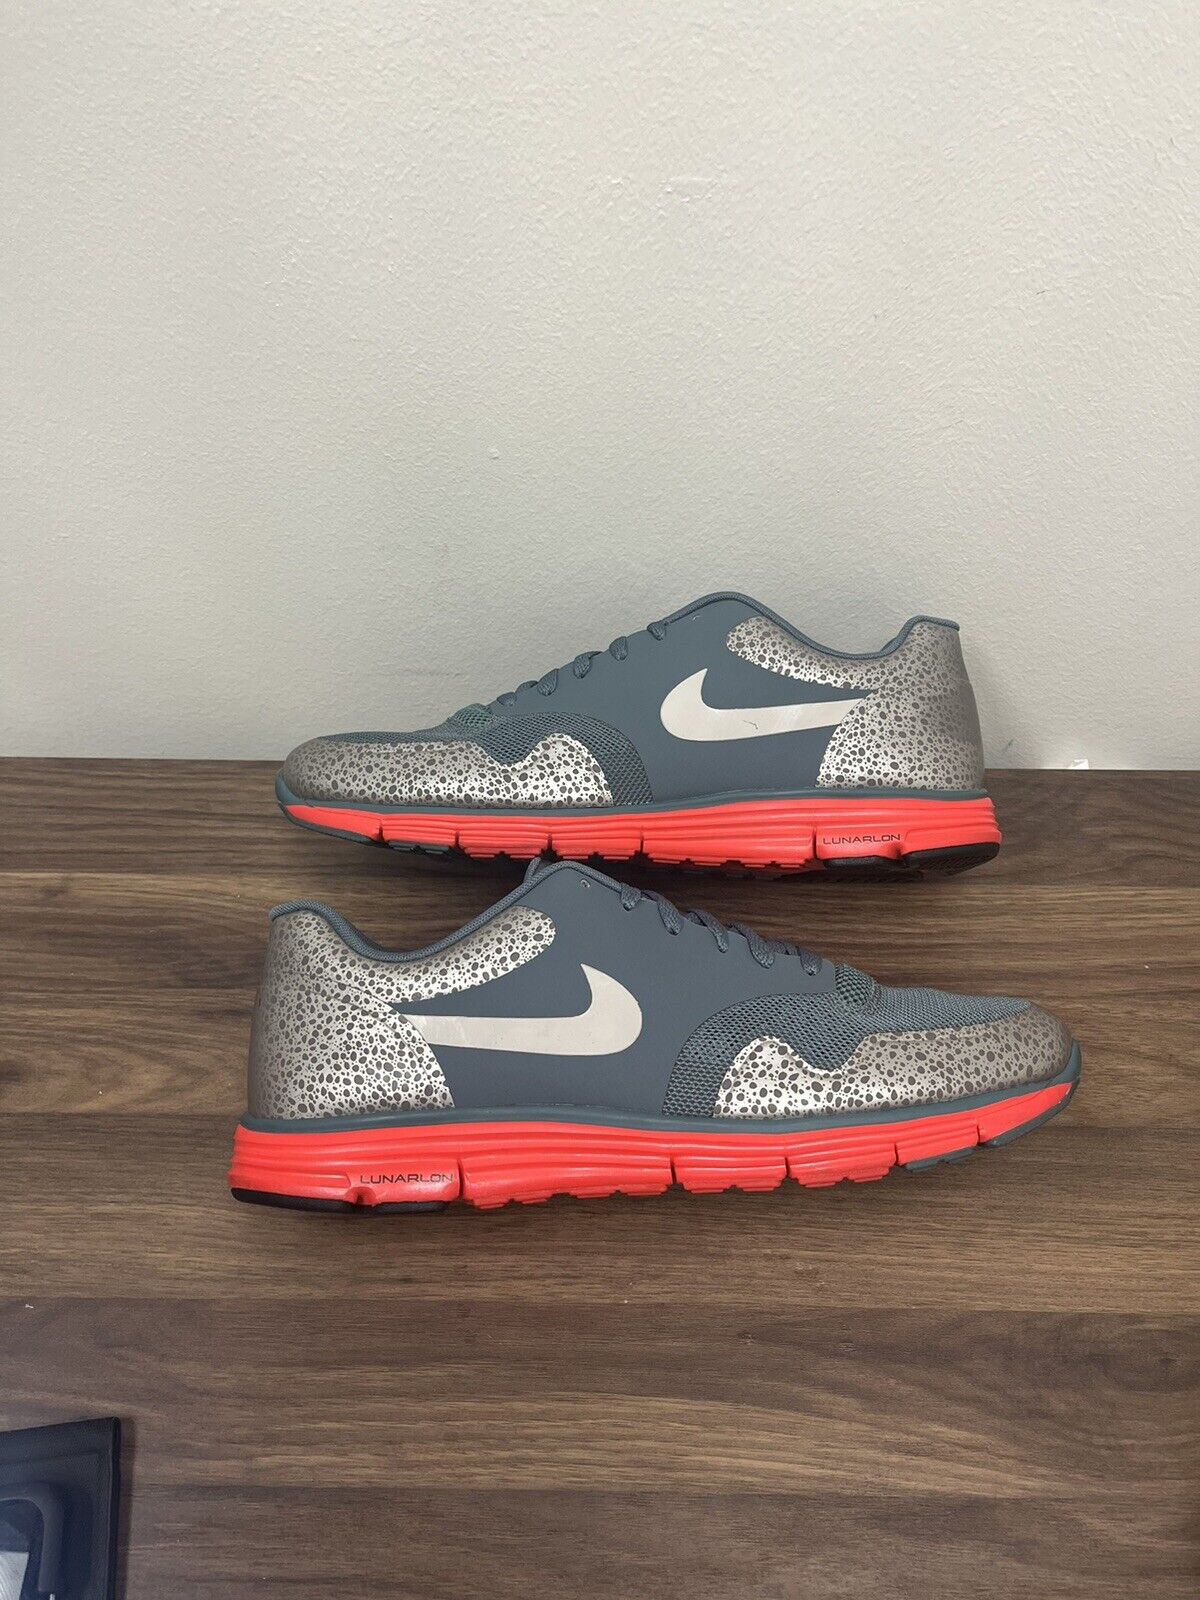 Nike Mens Lunar Safari 525059-370 Gray Running Shoes Sneakers Size 10